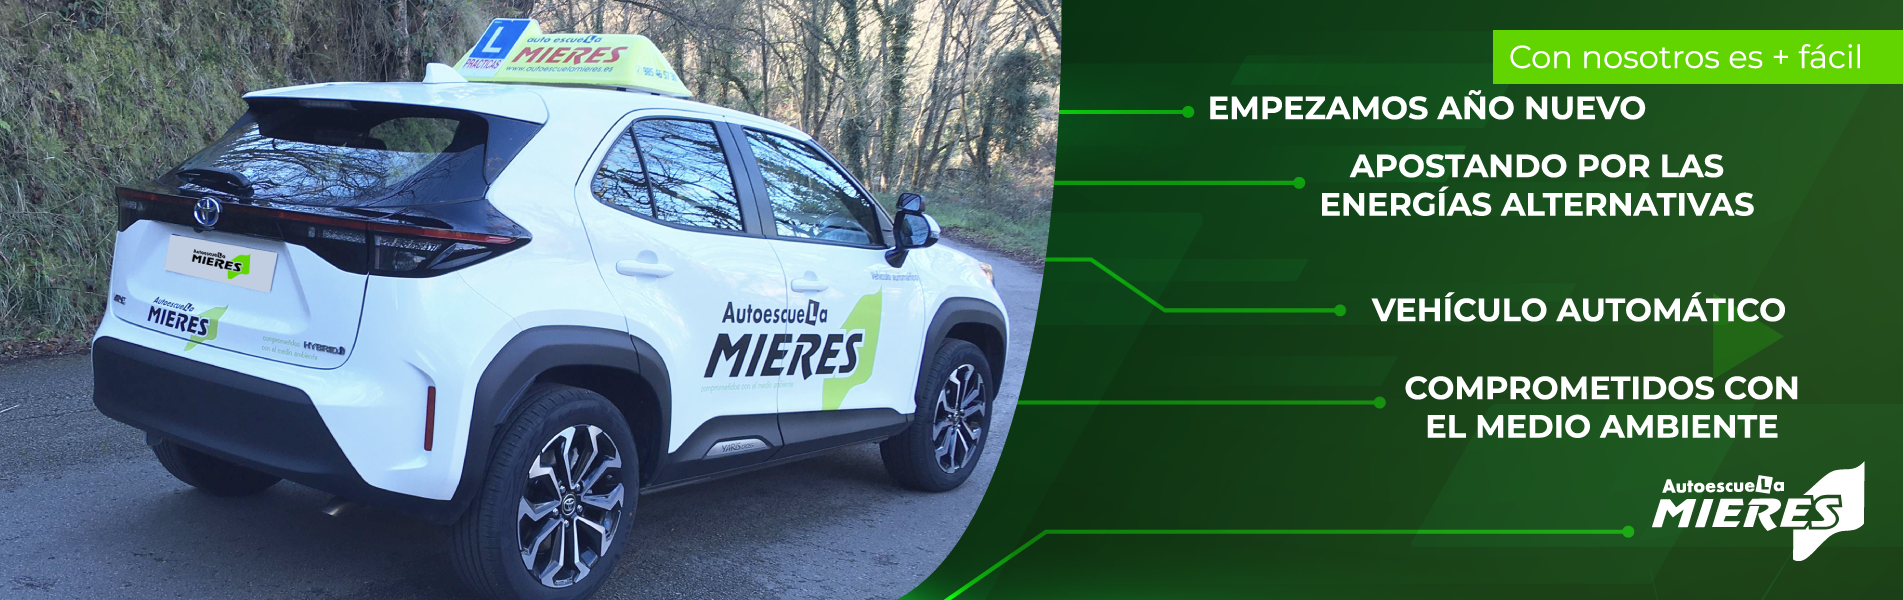 Autoescuela Mieres comienza el año ampliando su flota con un nuevo vehículo híbrido automático